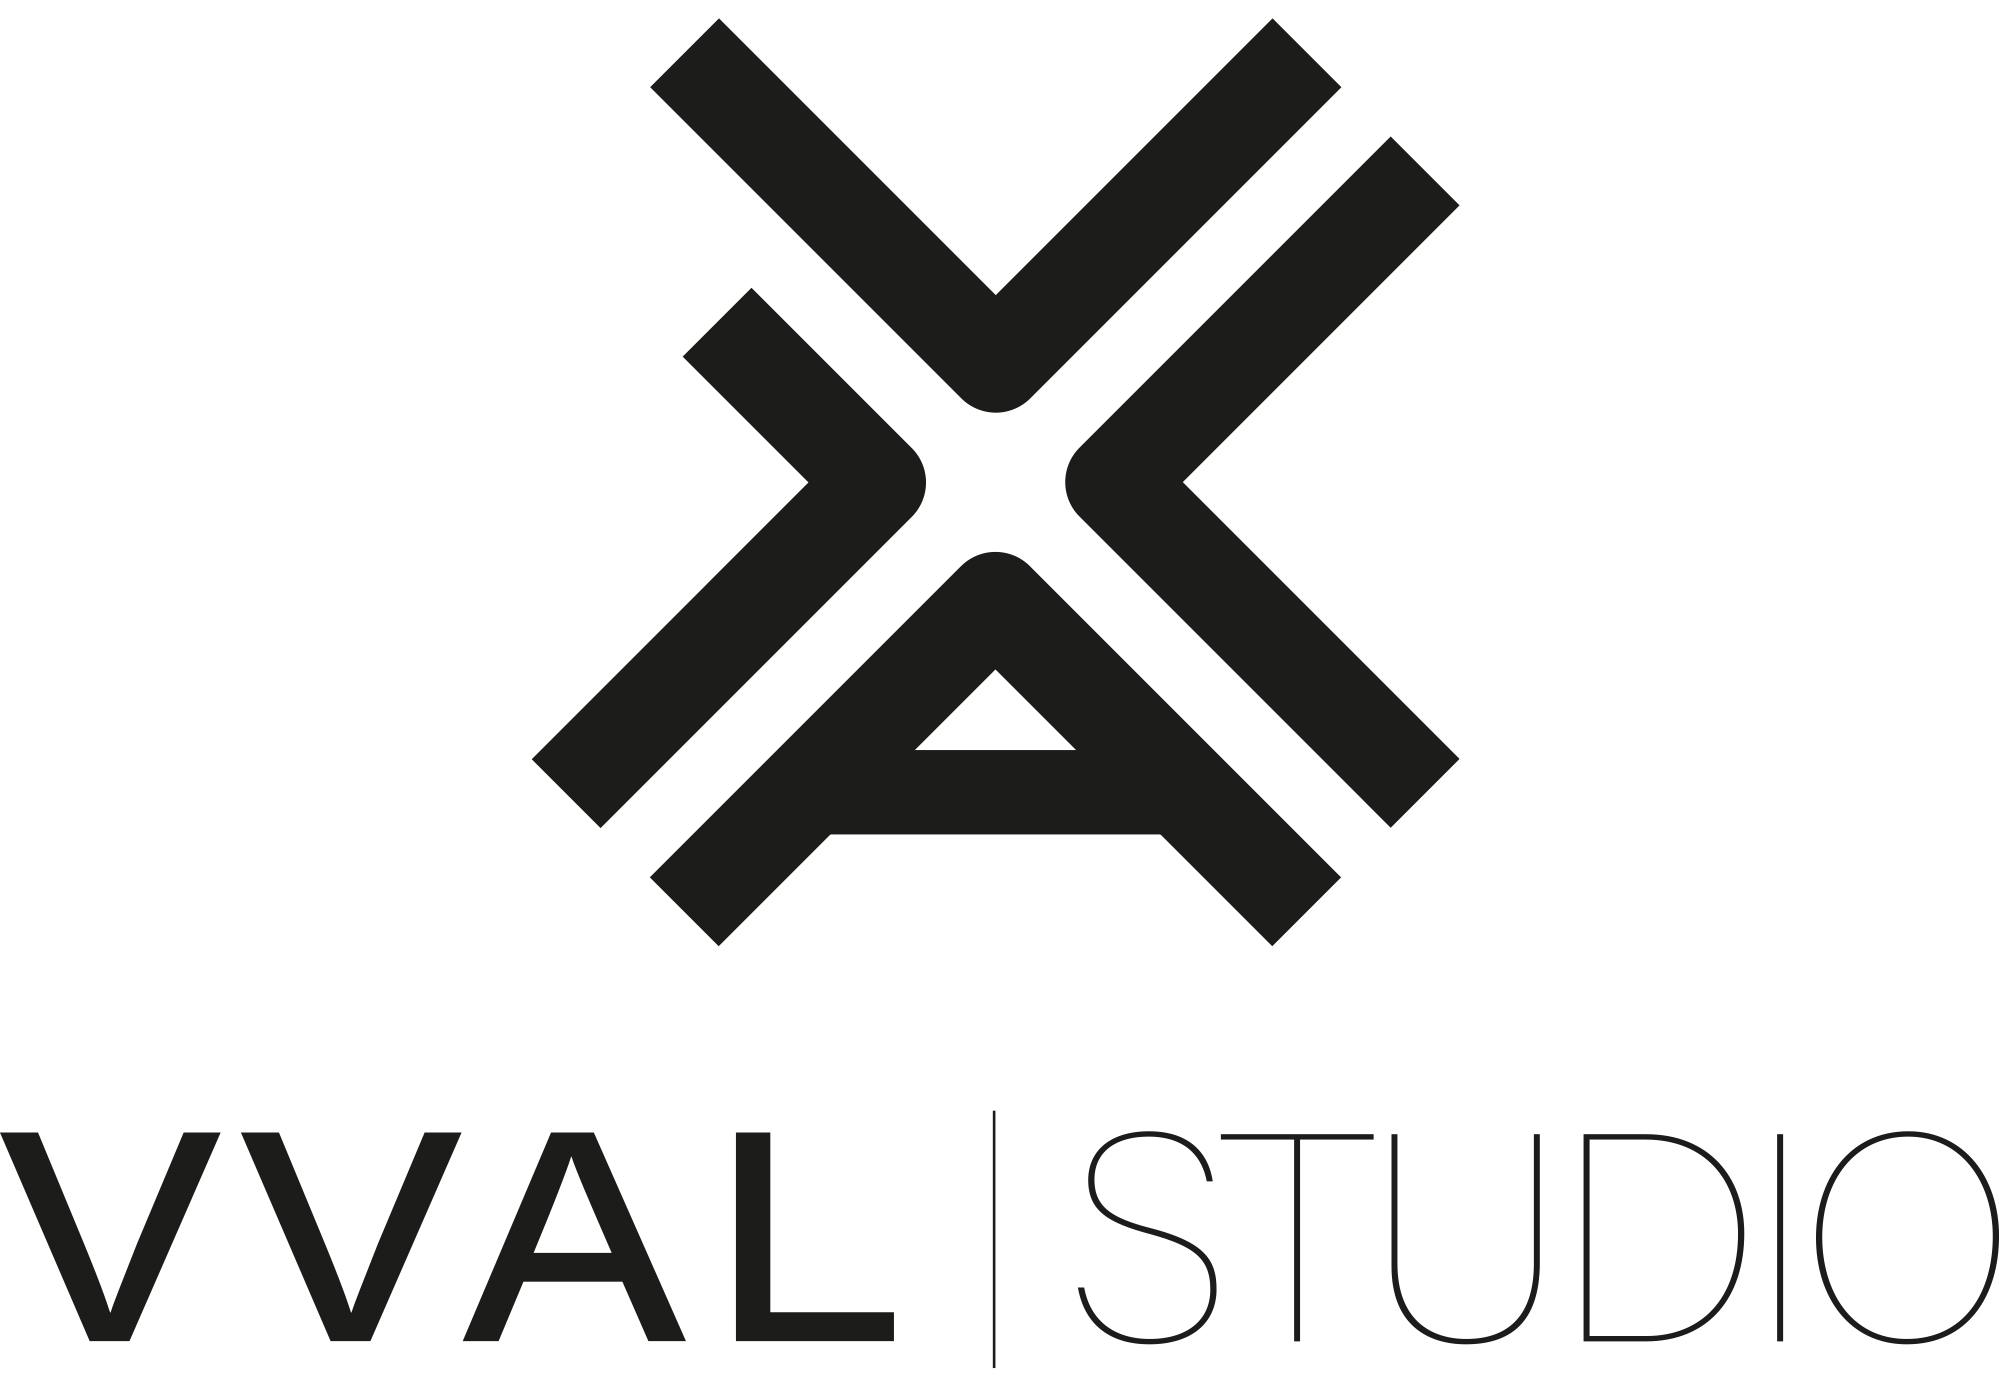 VVAL-studio_logo